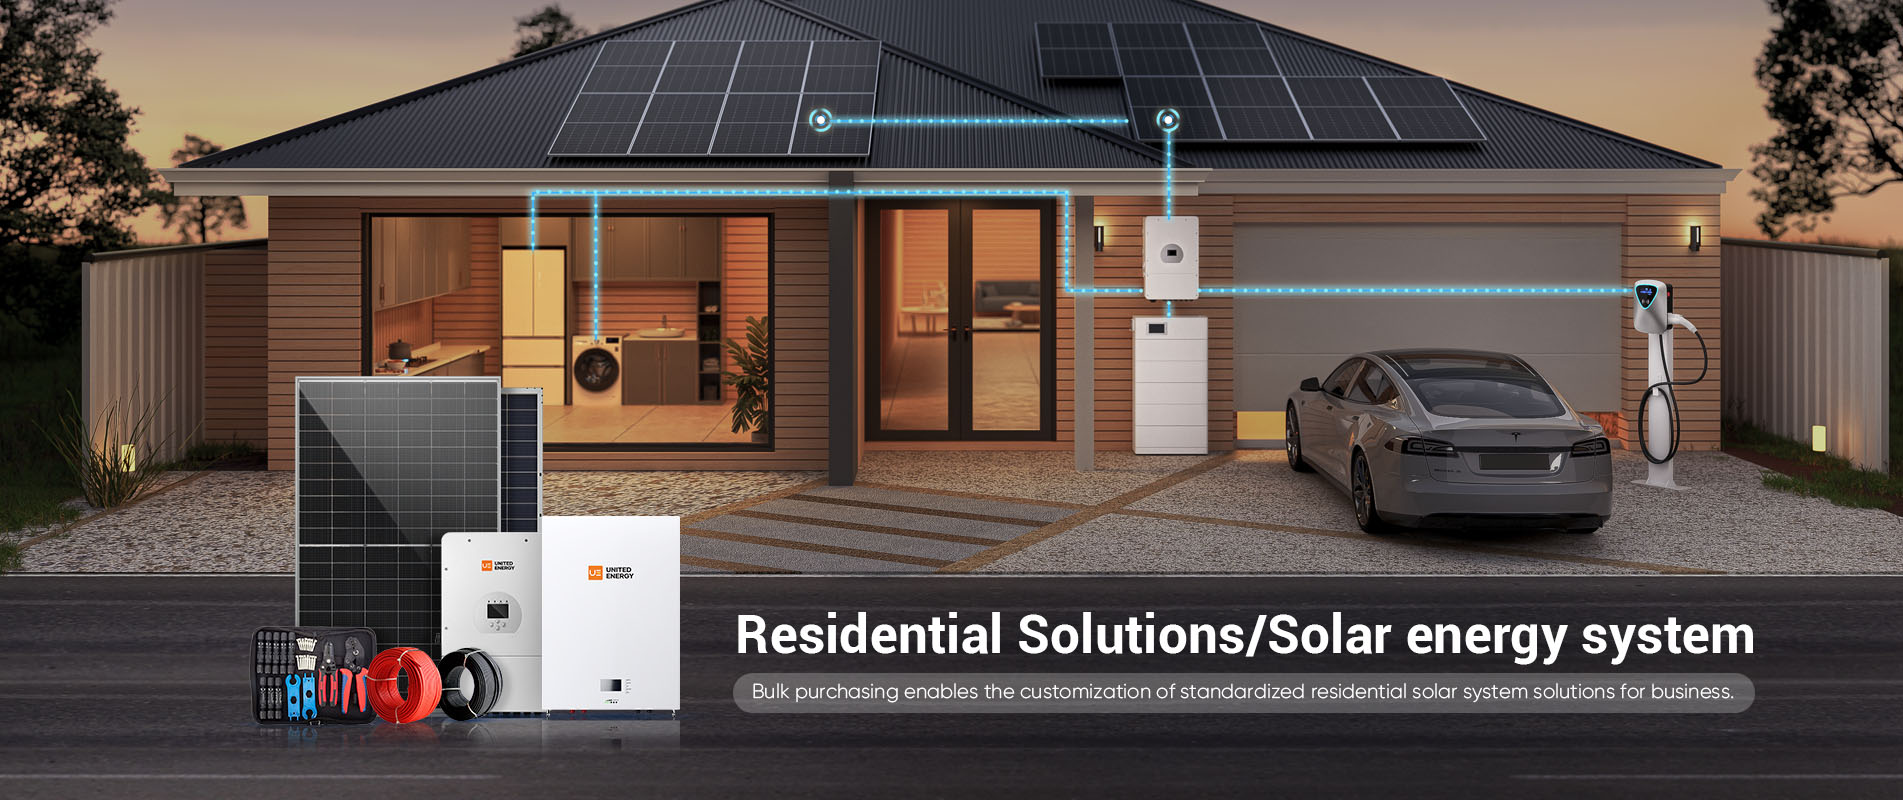 soluciones residenciales de sistemas de energía solar